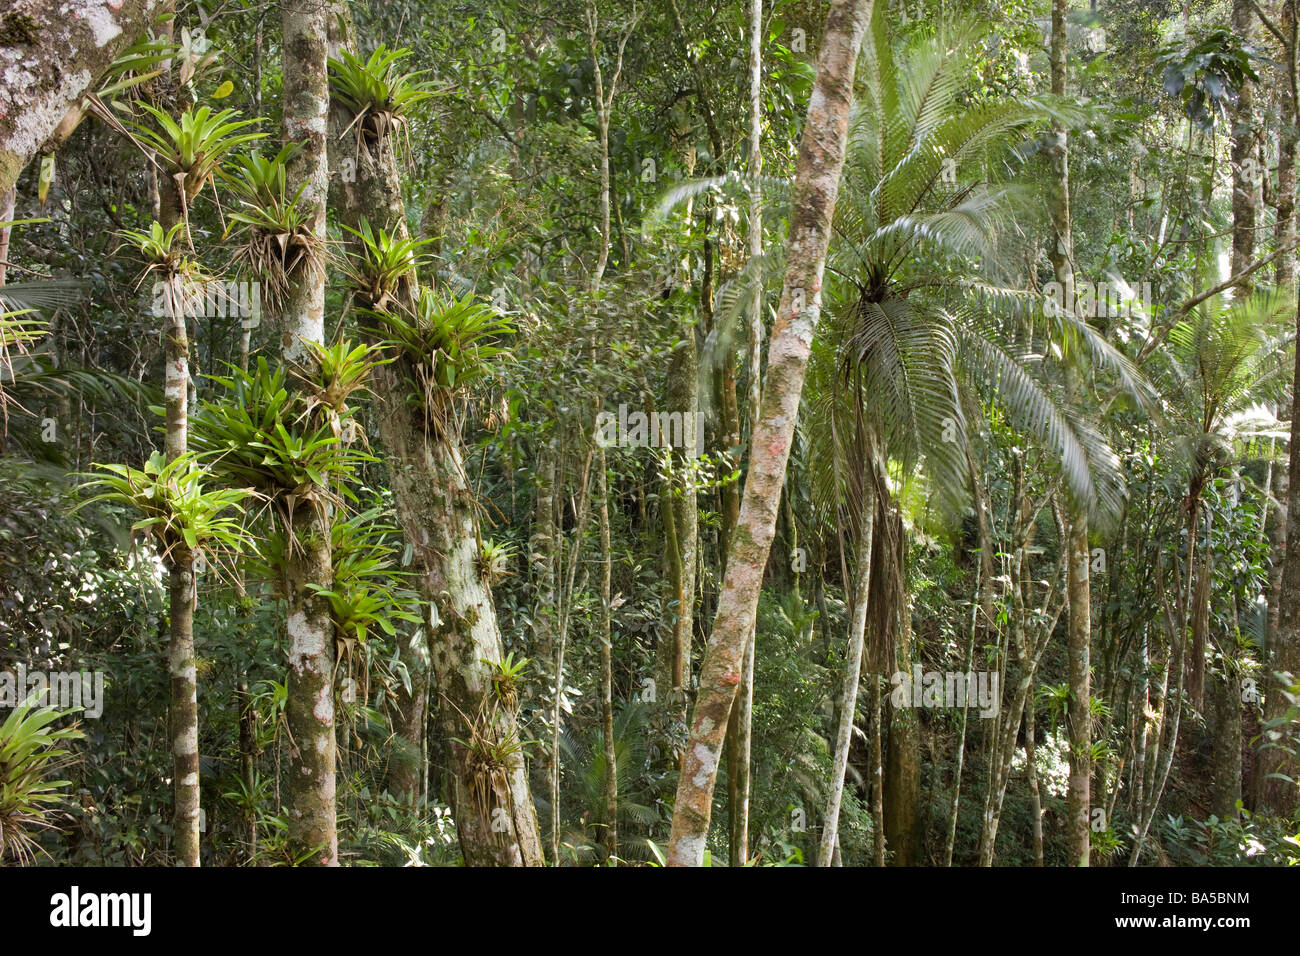 Bromelias and palm trees Stock Photo